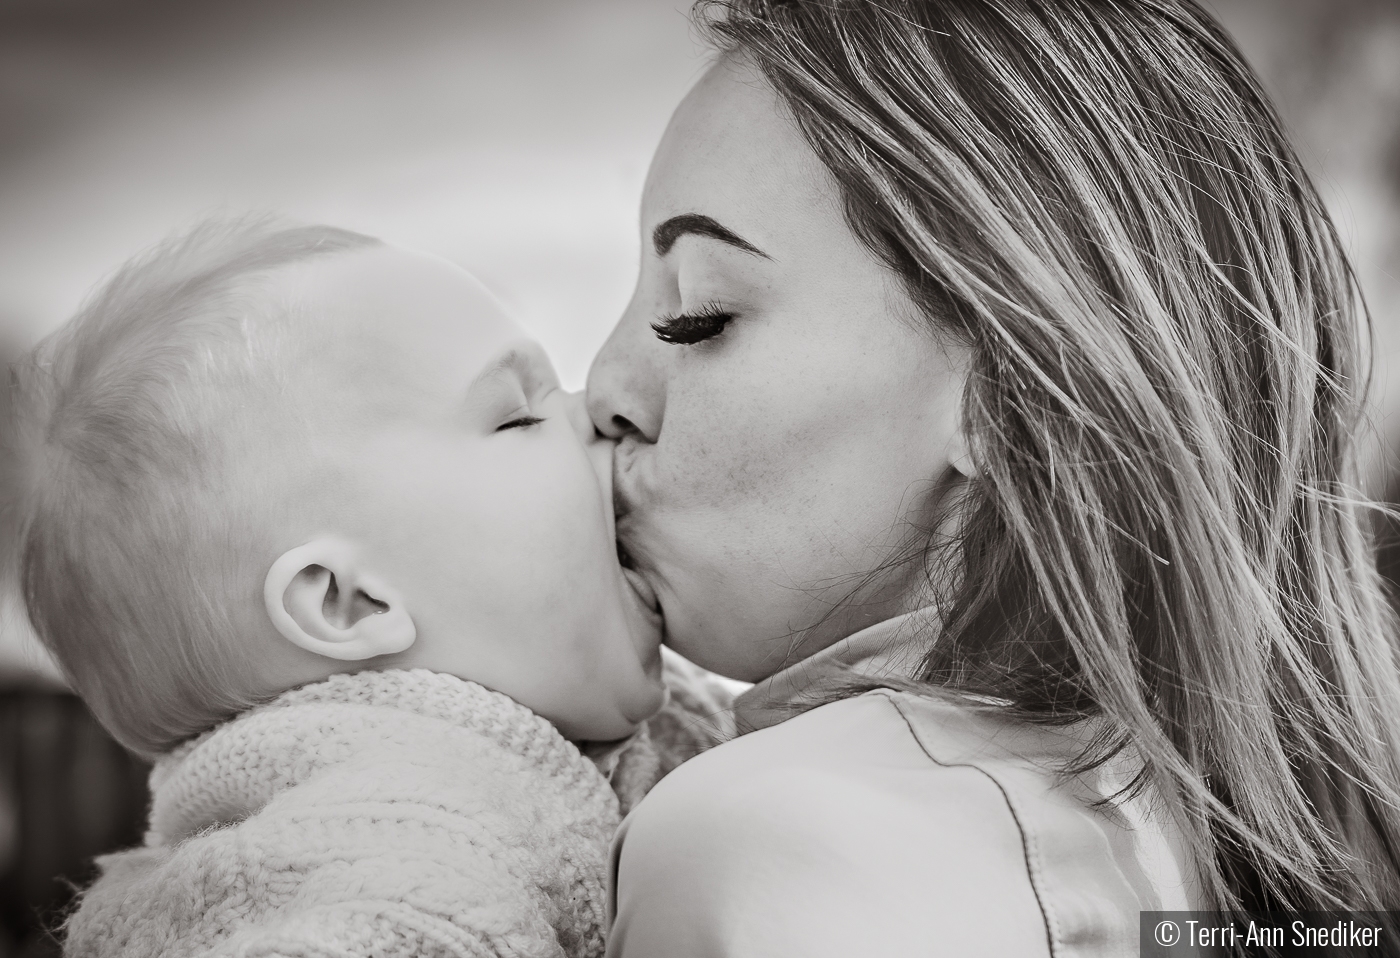 Giving Mommy kisses by Terri-Ann Snediker